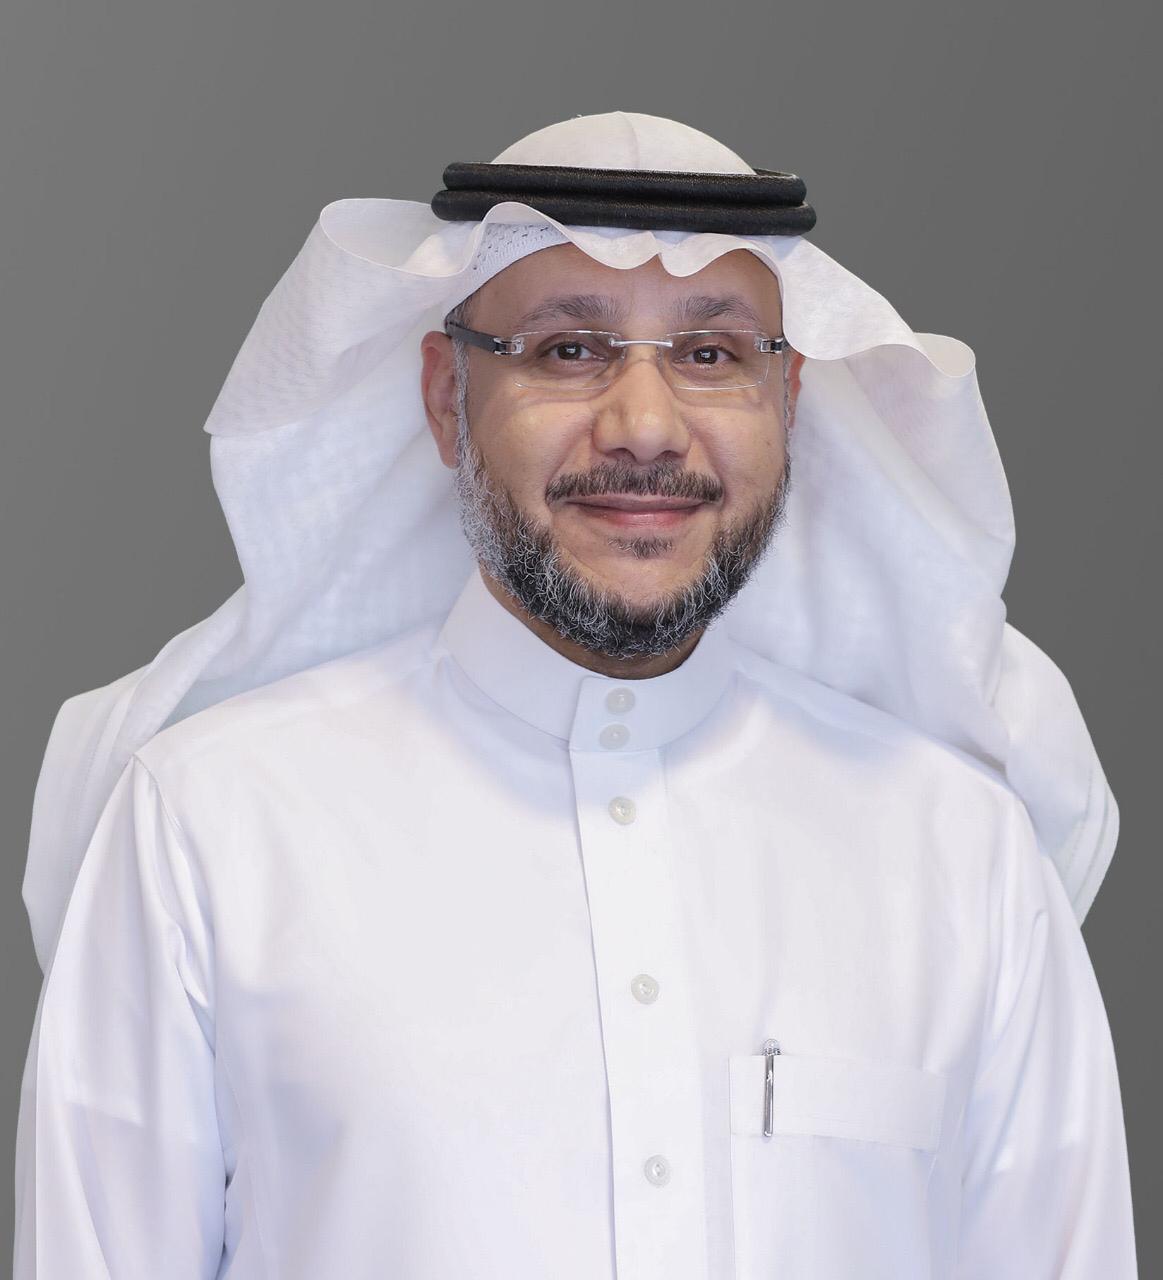 رئيس الهيئة السعودية للملكية الفكرية يهنئ القيادة بحلول عيد الفطر المبارك